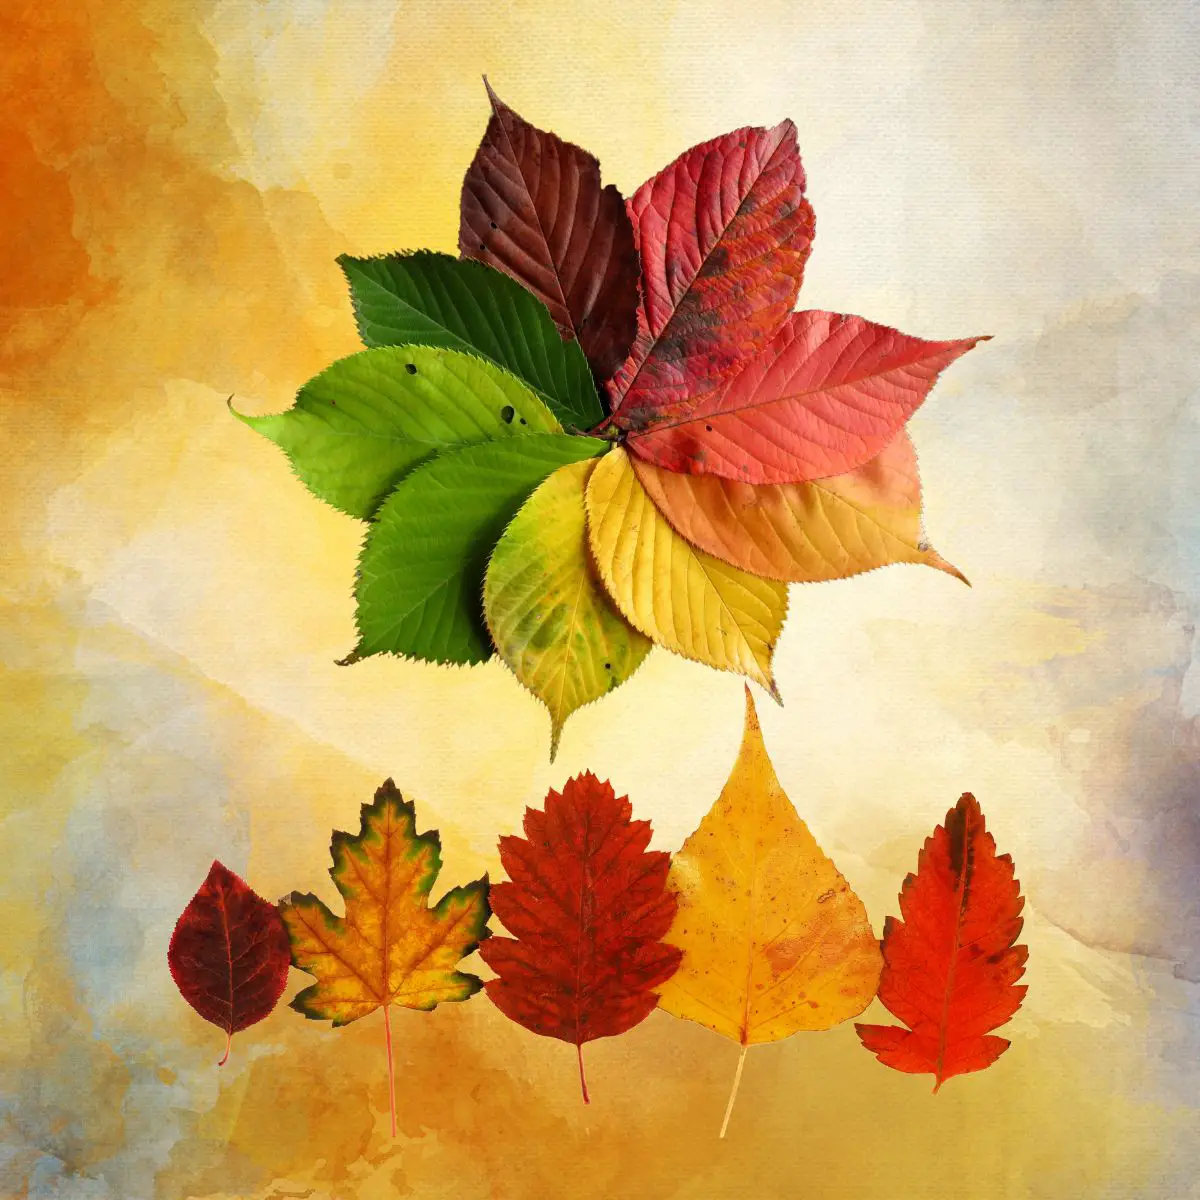 Wunderschöne, bunte Herbstblätter vor buntem Hintergrund.